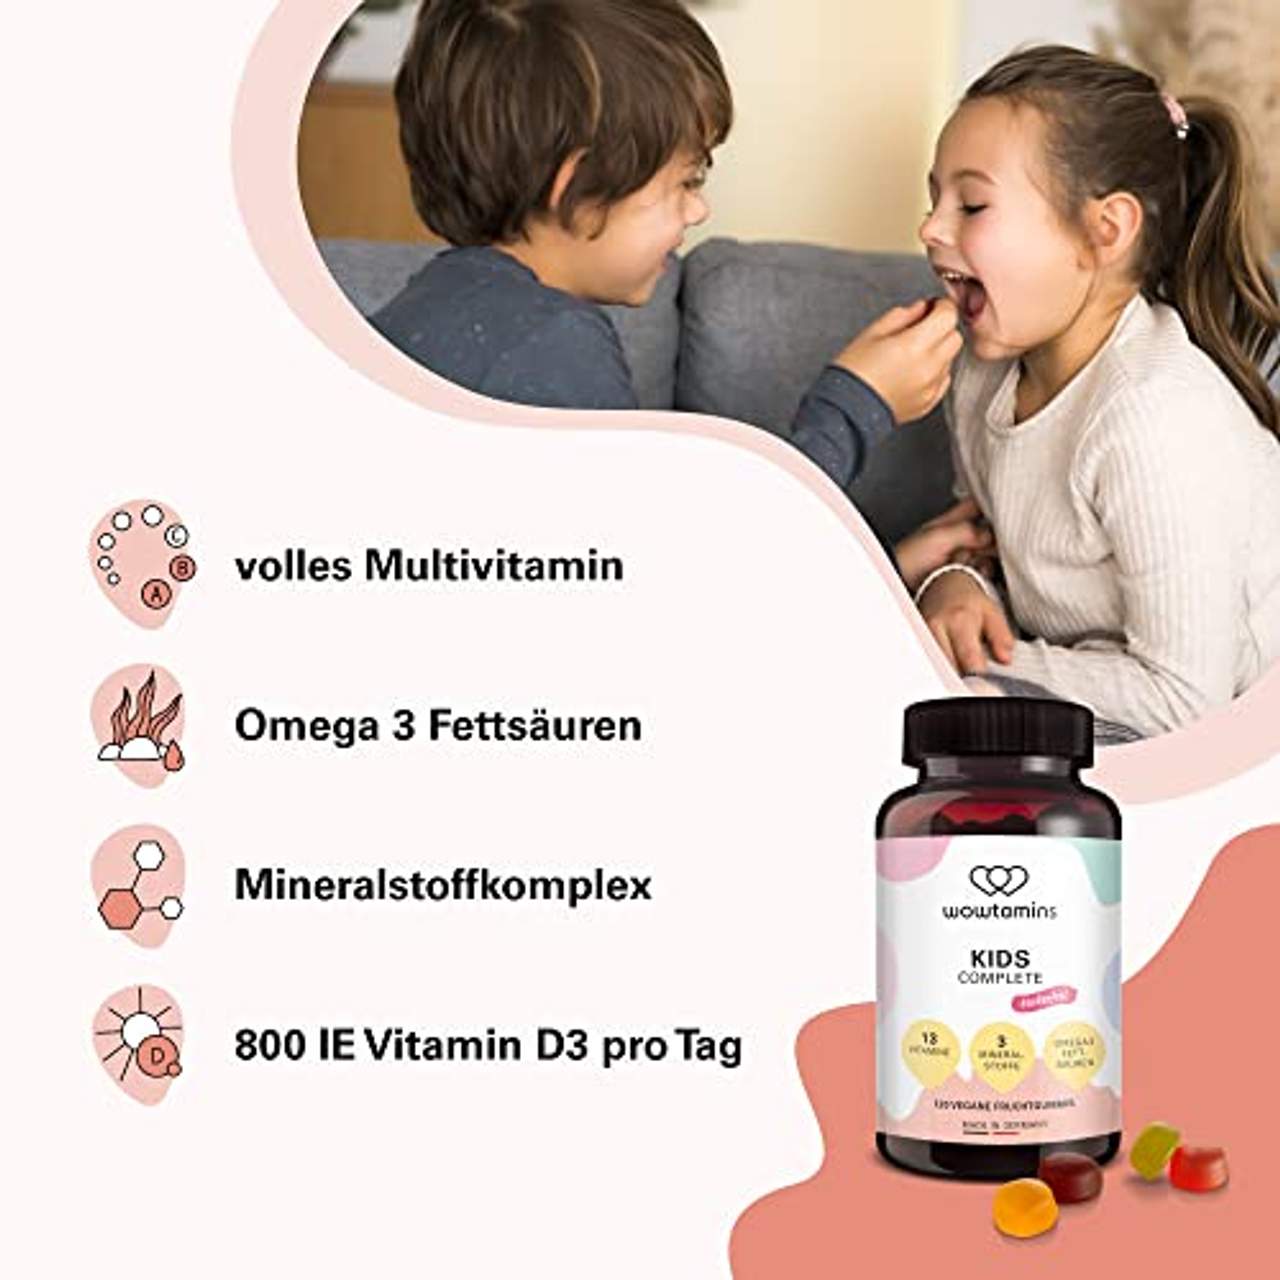 wowtamins Kids Complete leckere Multivitamin-Fruchtgummis